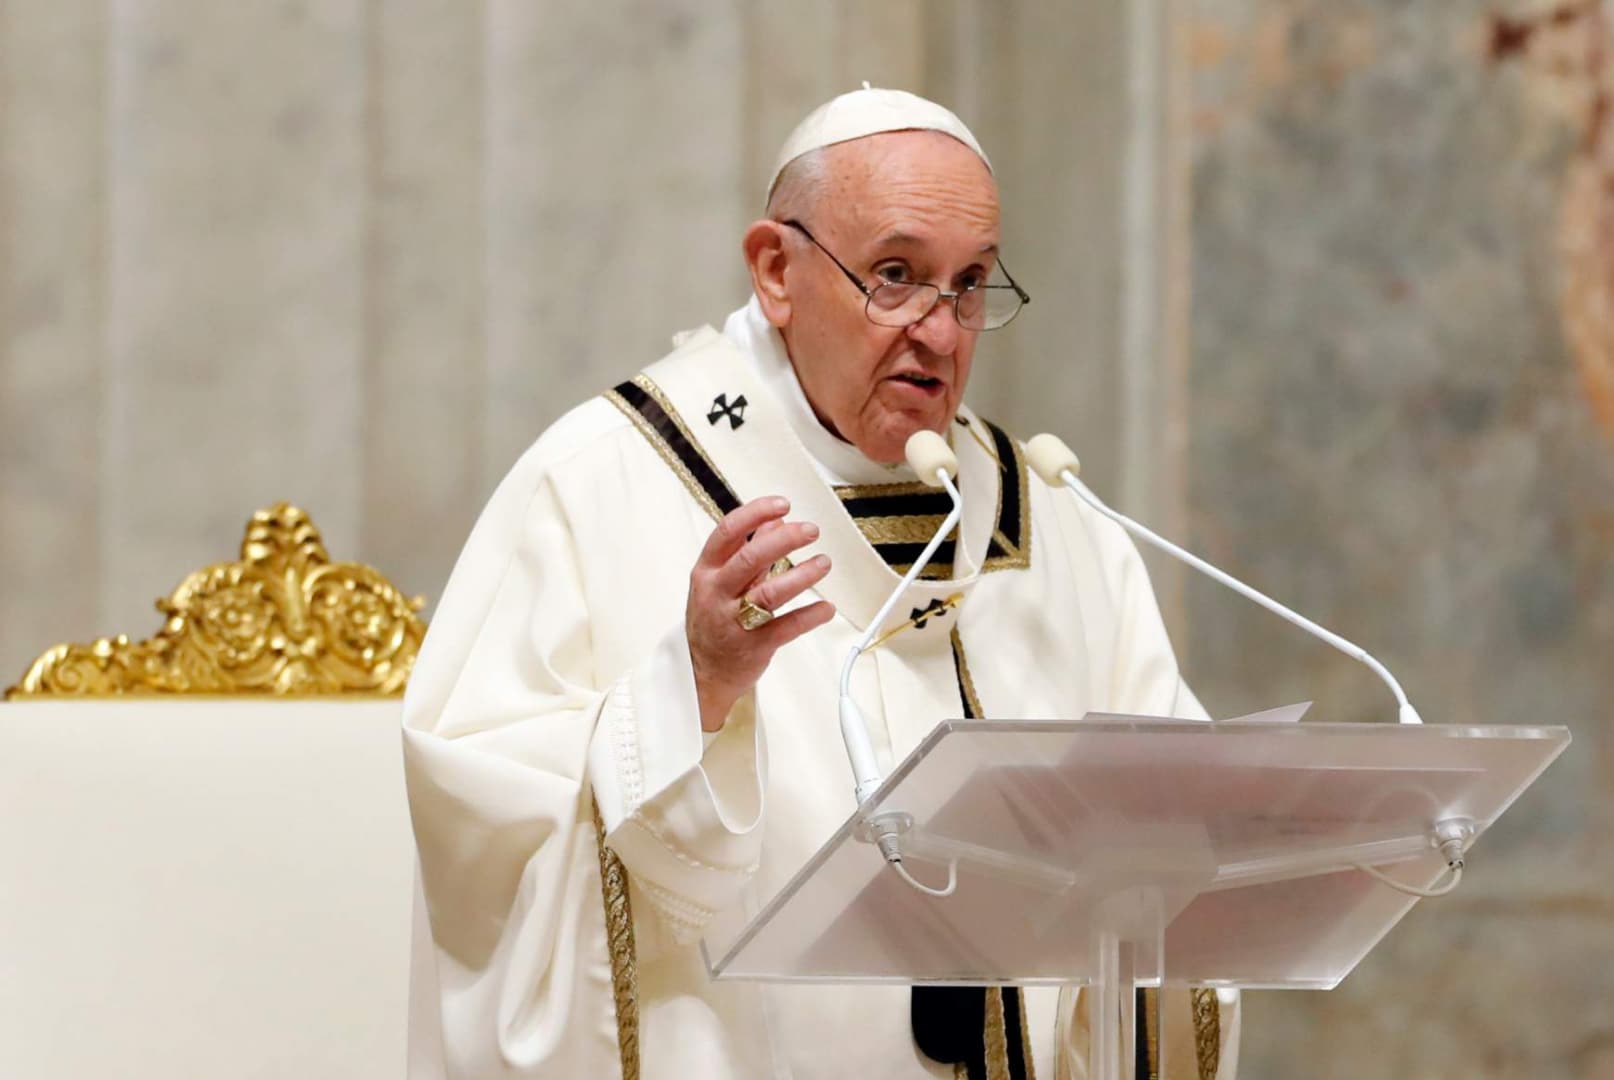 "Gyermeteg és pusztító agressziónak" minősítette Ferenc pápa a konfliktust